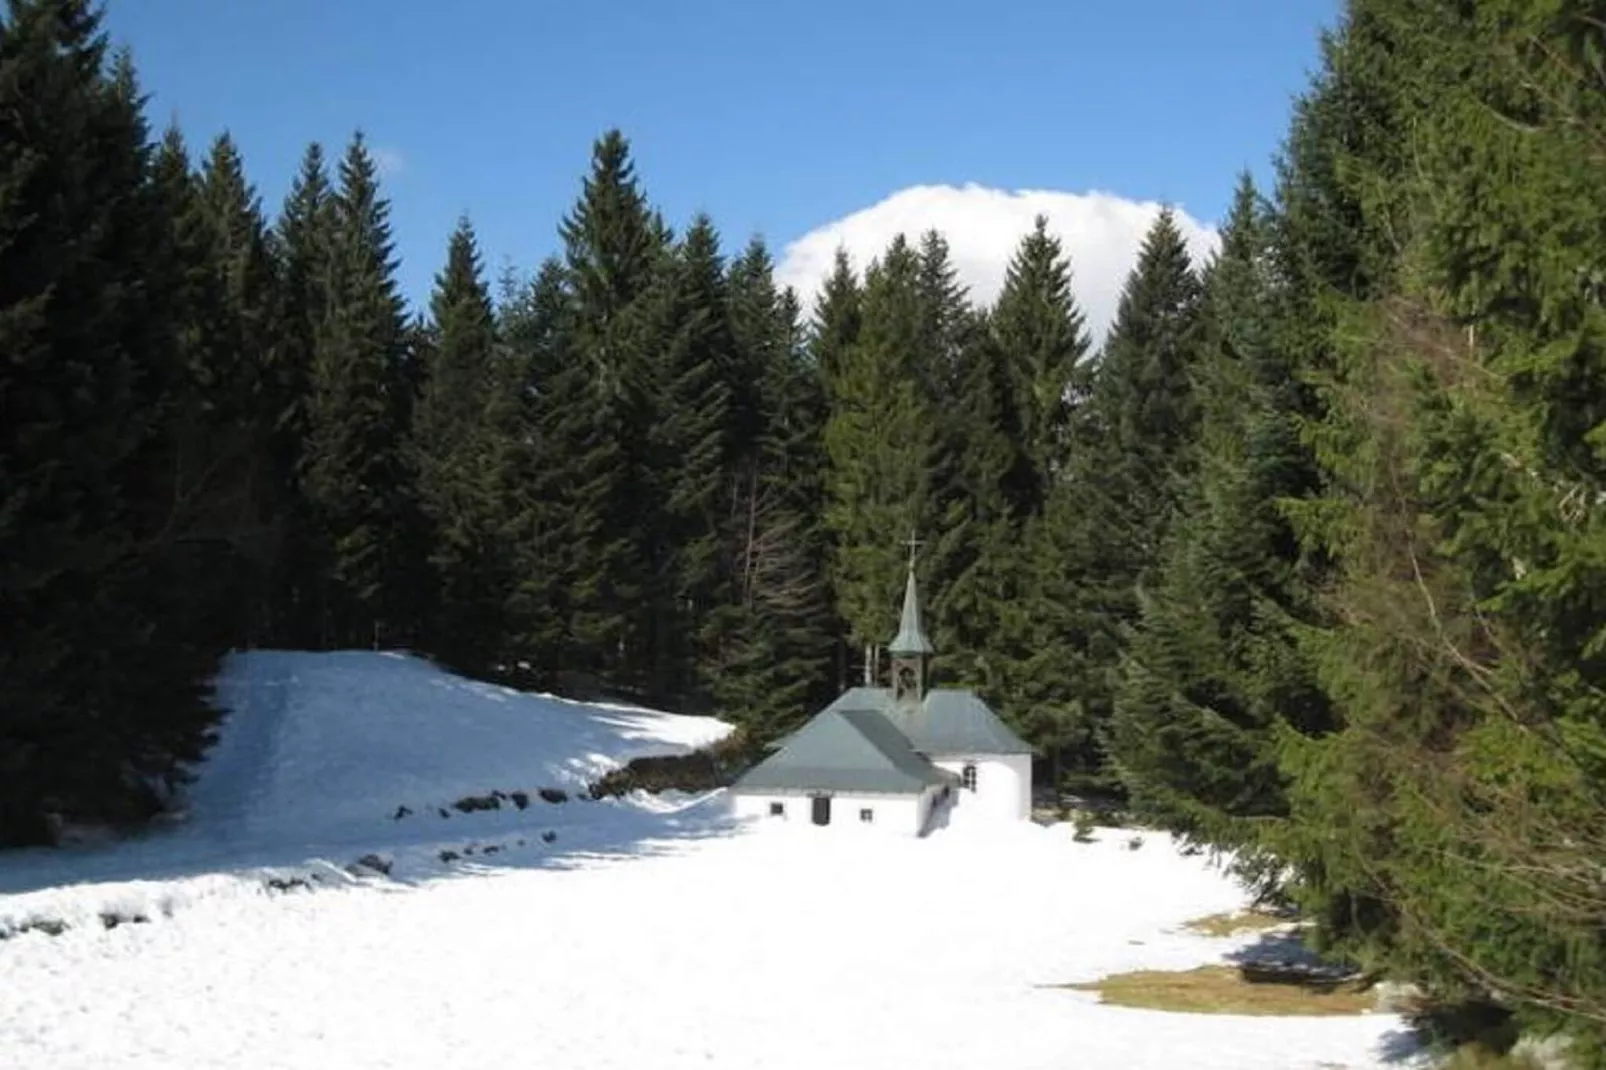 Chalet de montagne-Gebied winter 5km